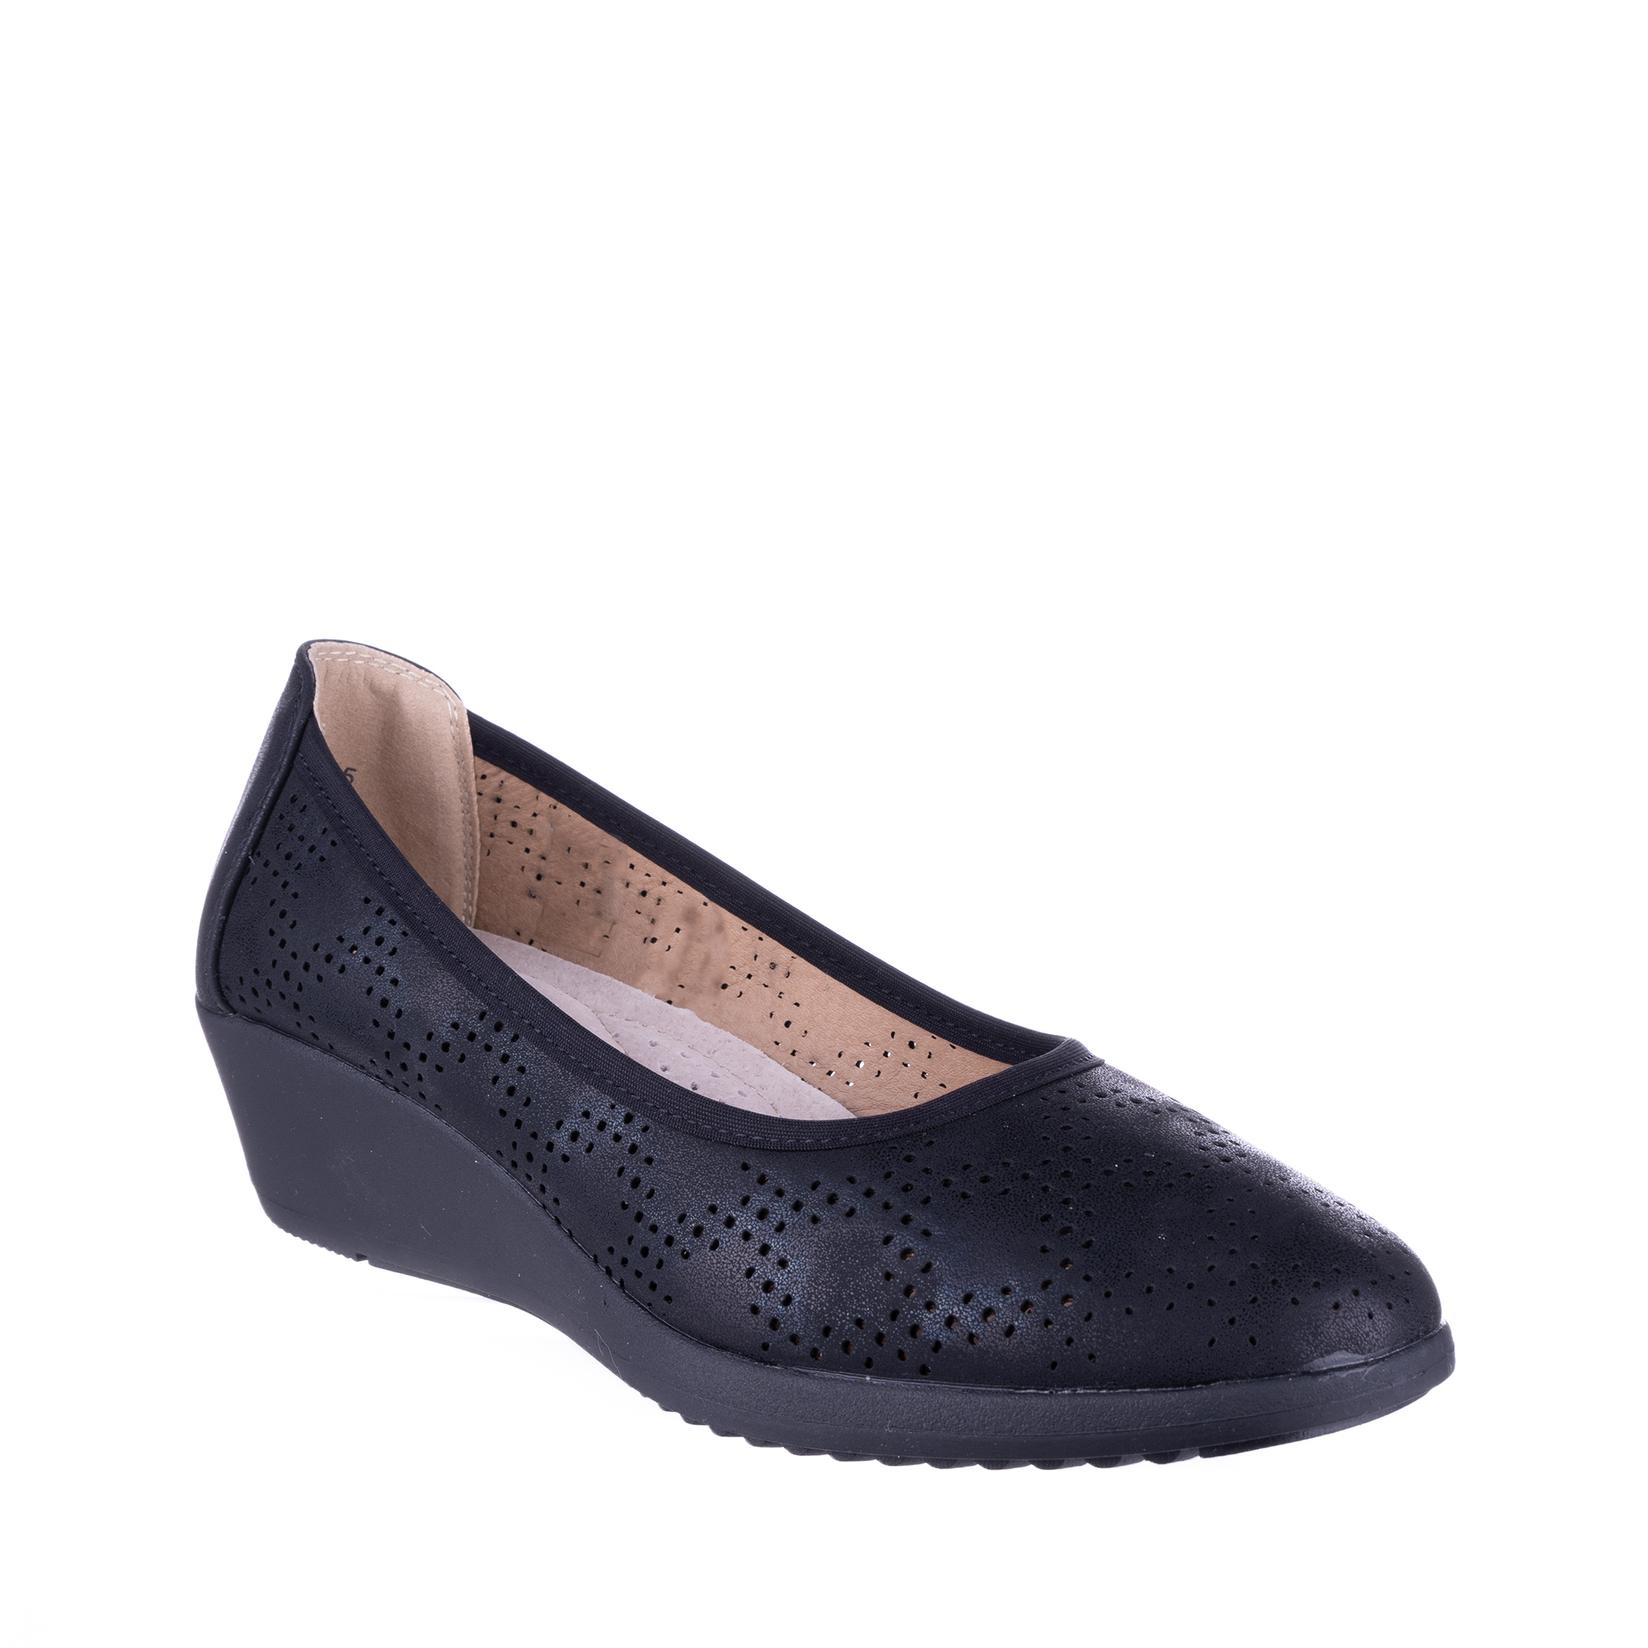 COMFORT BY ELLY SHOES Ženske cipele N74738, Crne